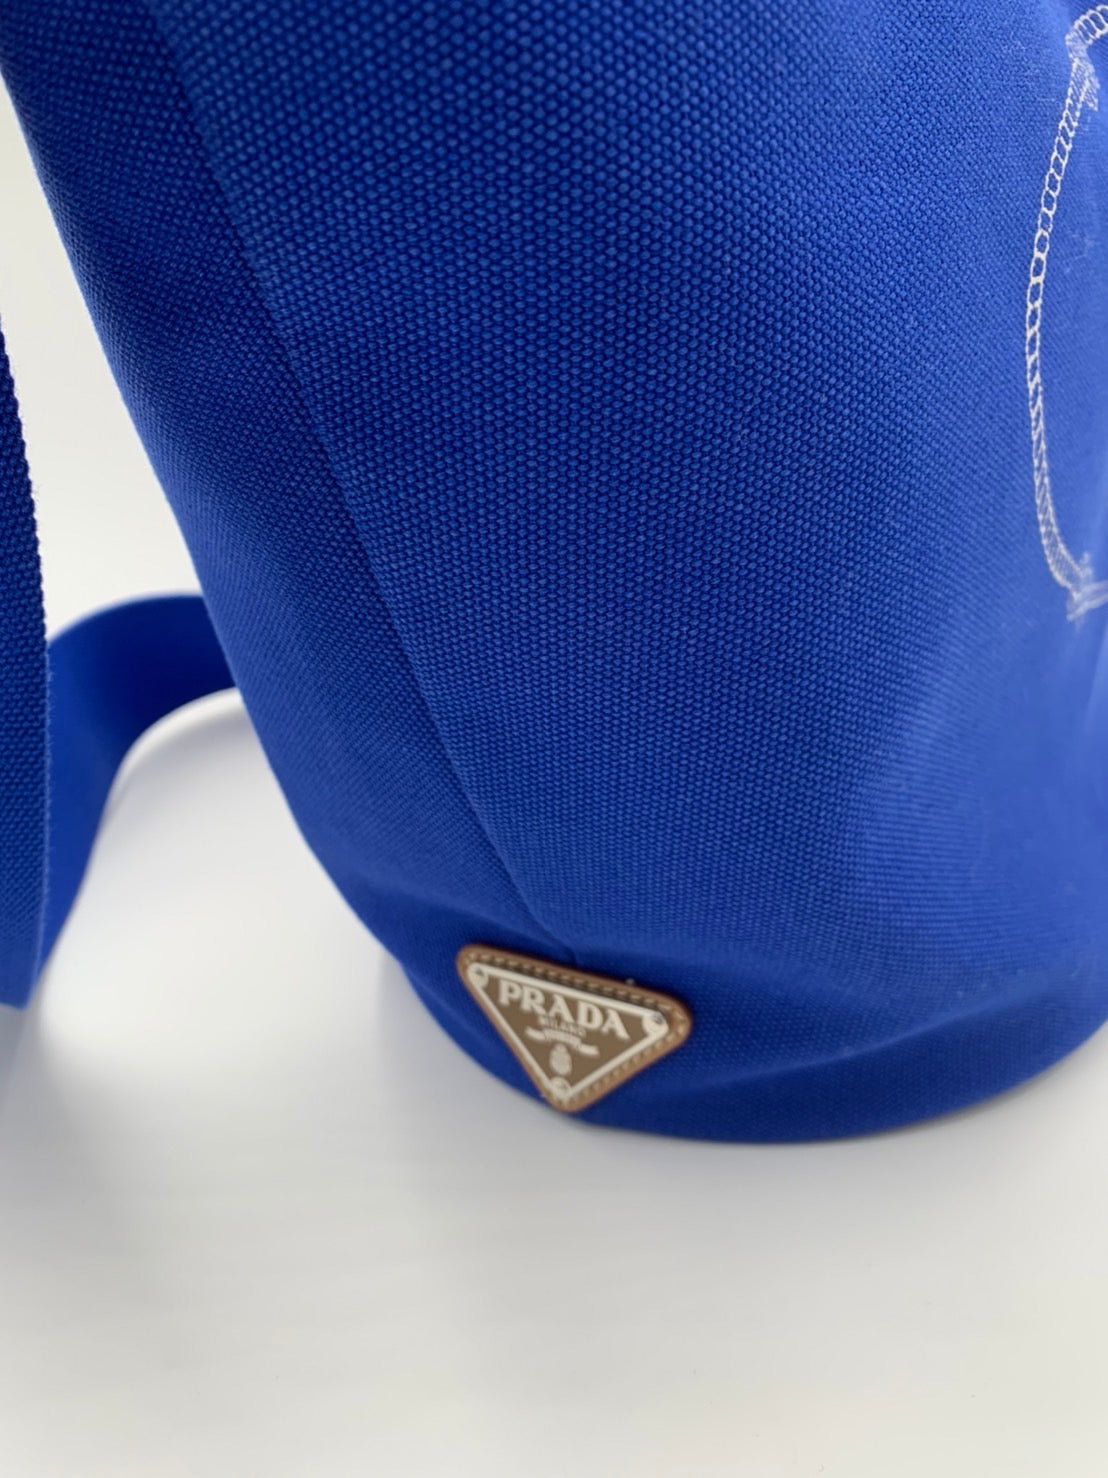 【本物保証】 布袋付 超美品 プラダ PRADA カナパ トート トートバッグ キャンバス ブルー BN1872 ラージ 大きい